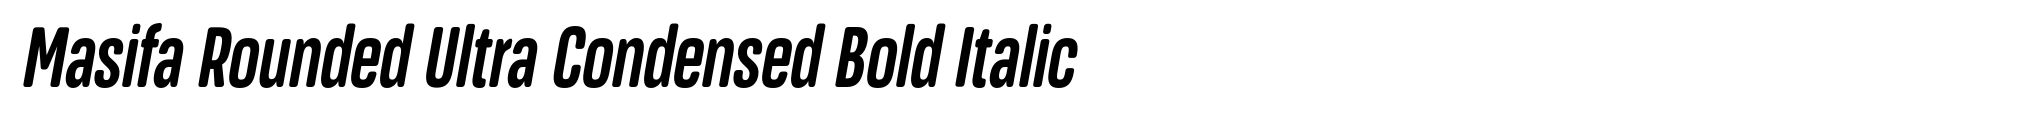 Masifa Rounded Ultra Condensed Bold Italic image